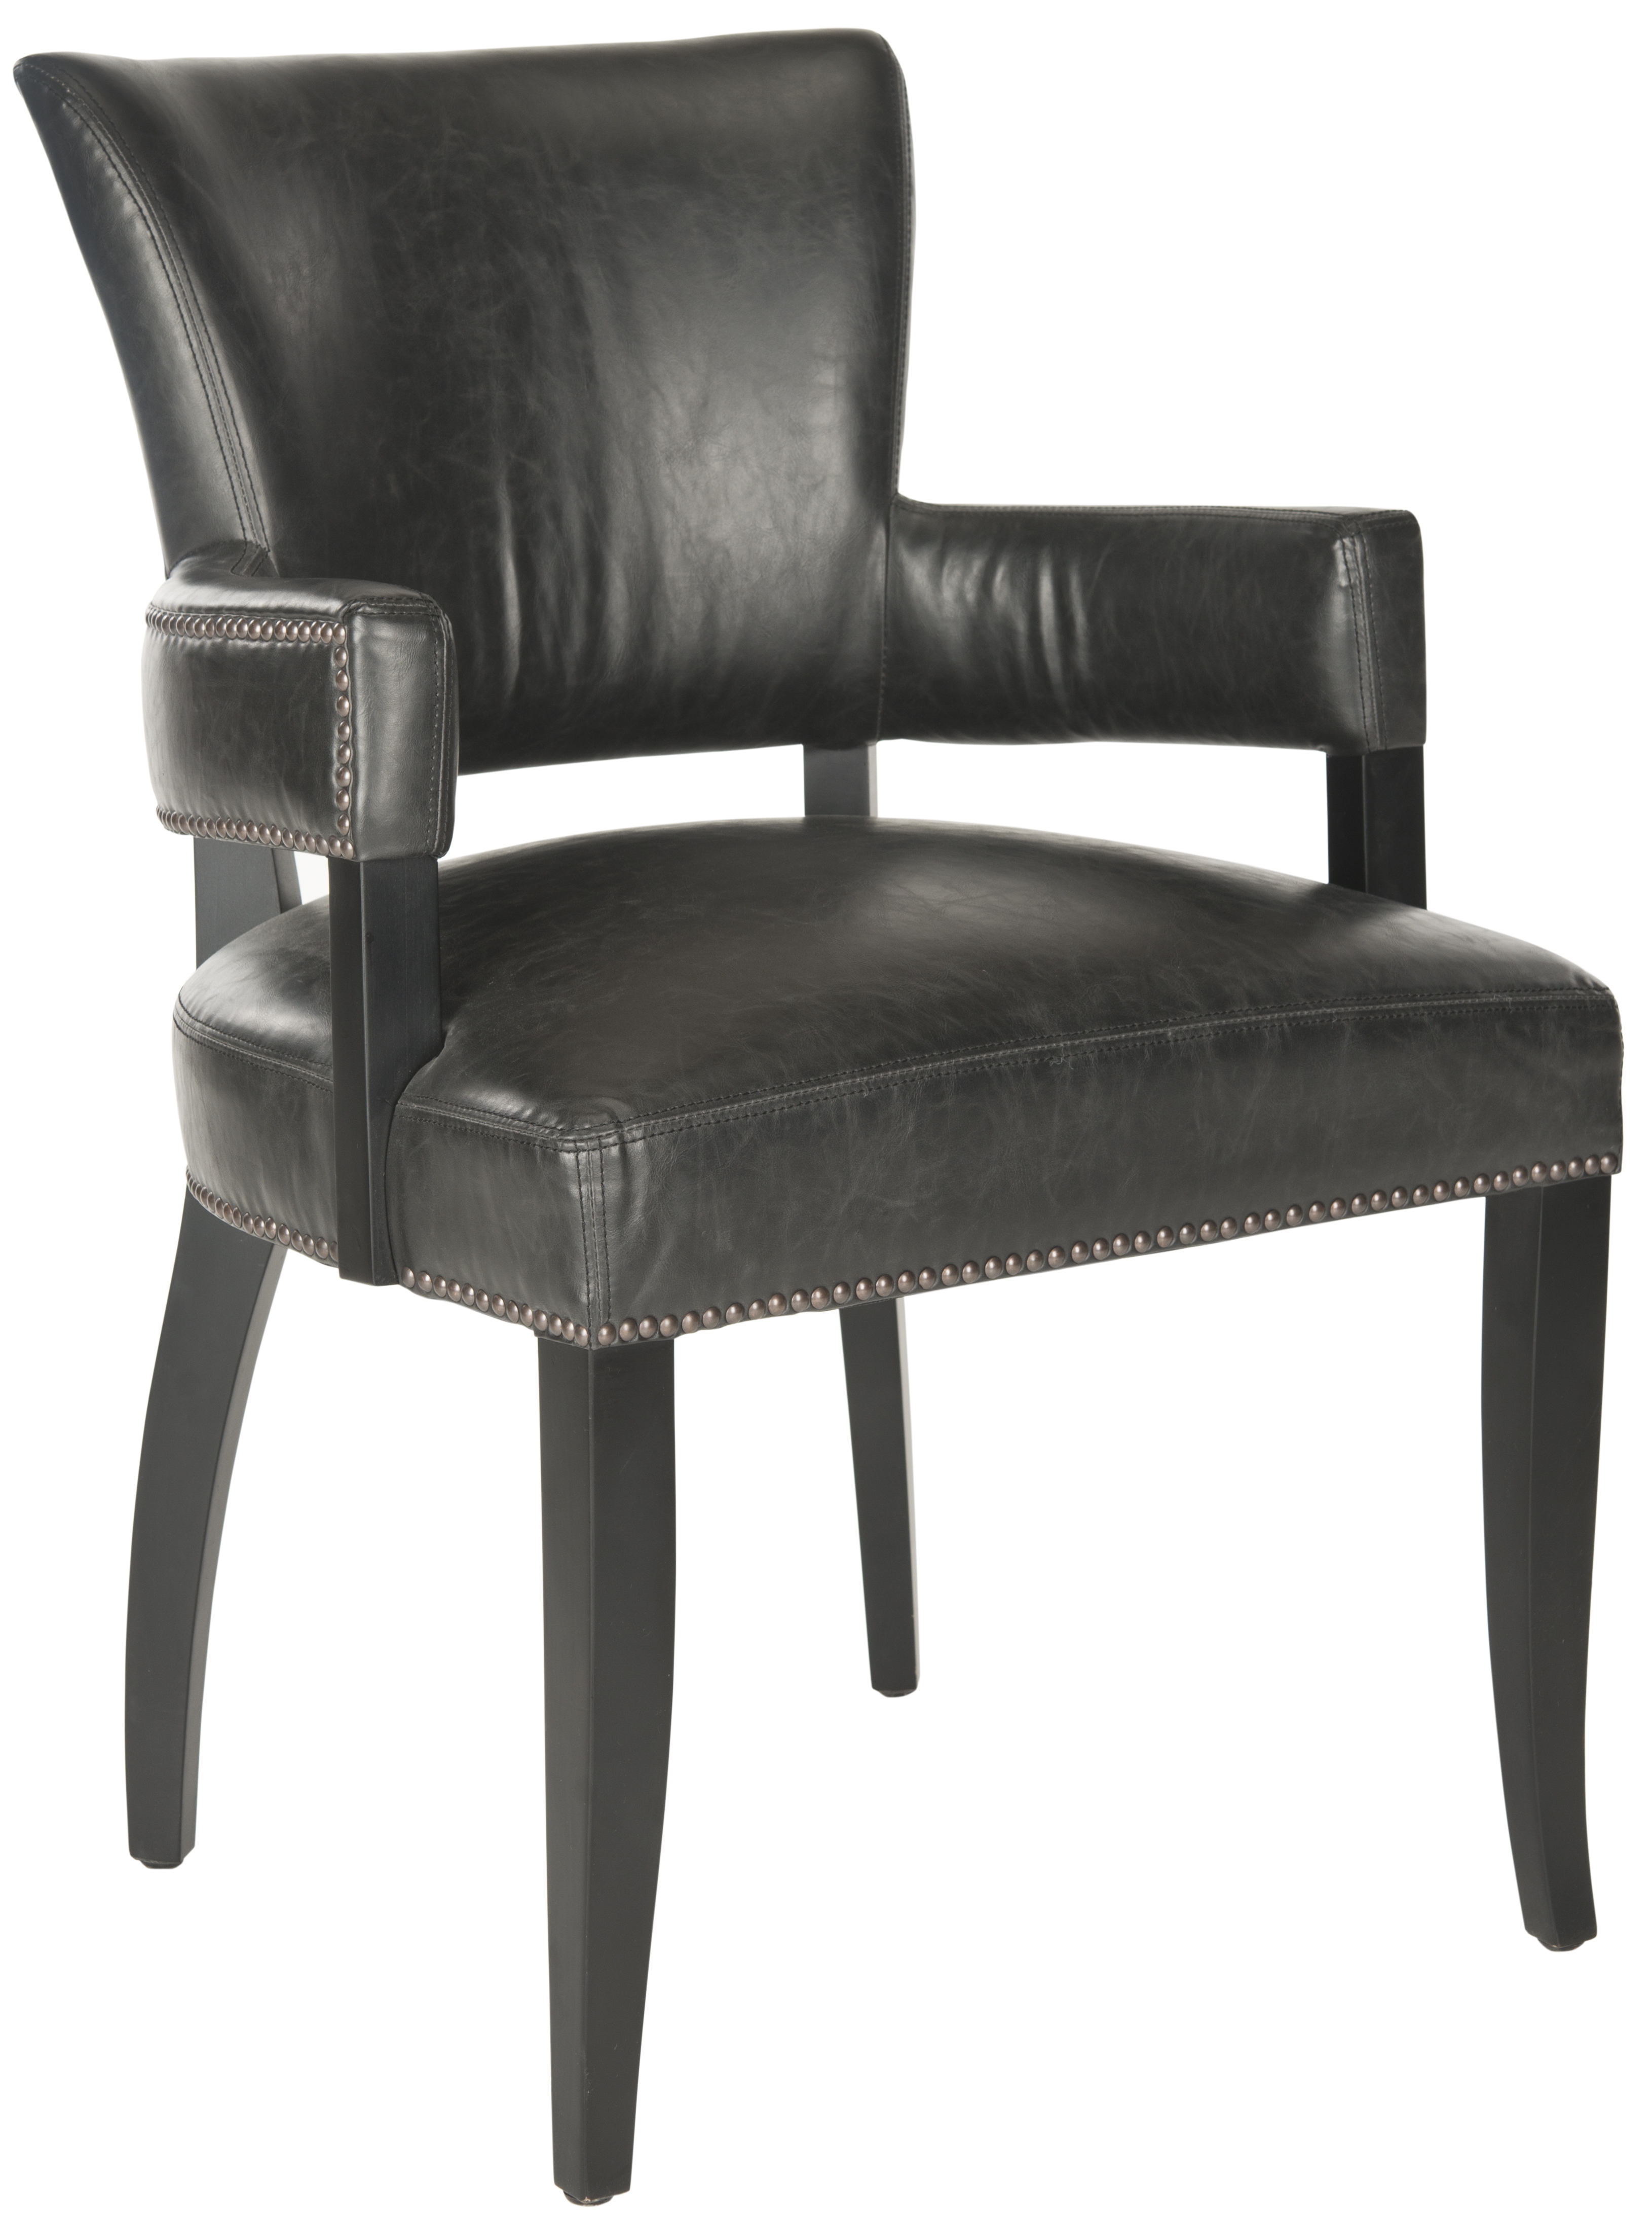 Desa 21''H Arm Chair - Brass Nail Heads - Antique Brown/Black - Arlo Home - Image 1